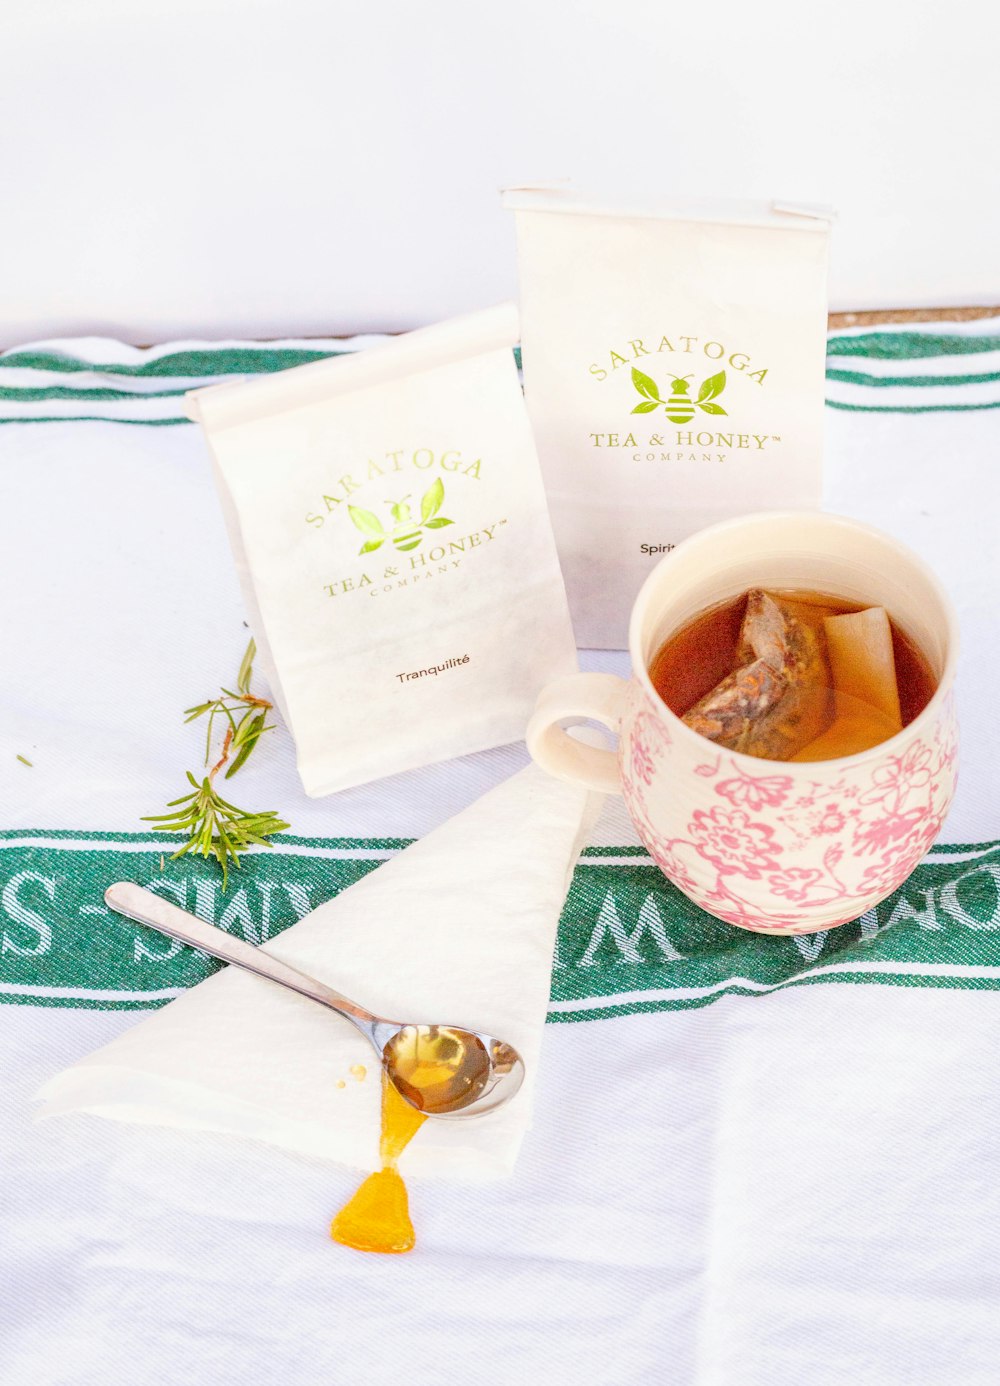 xícara de chá de cerâmica branca e verde com pires